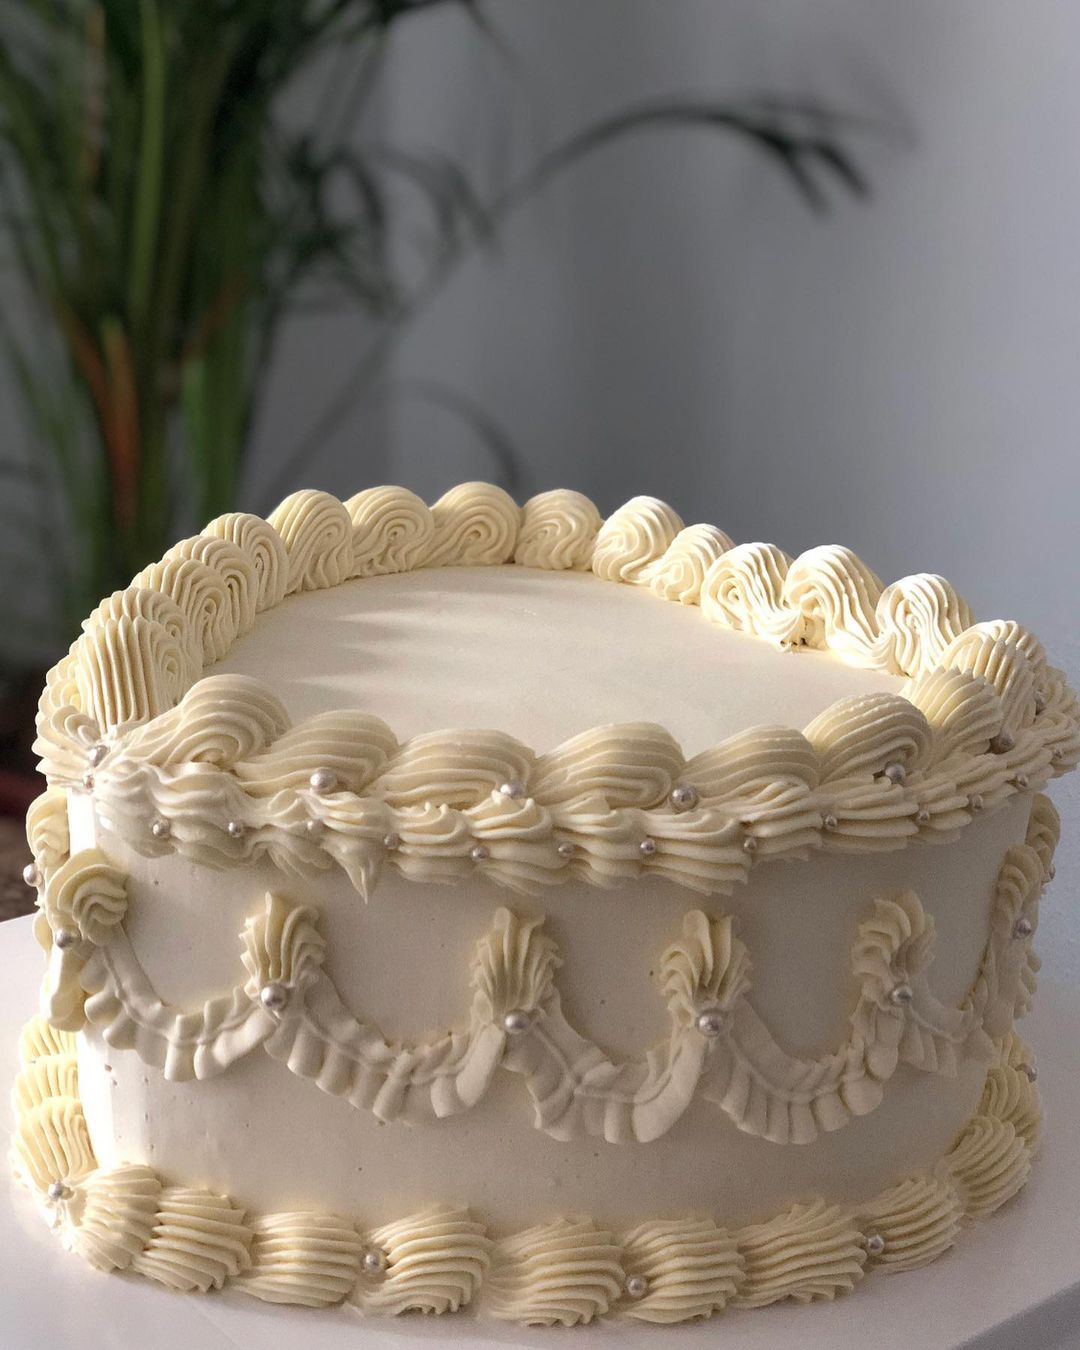 heart cake, cake designer bordeaux, gateau anniversaire pastel fête